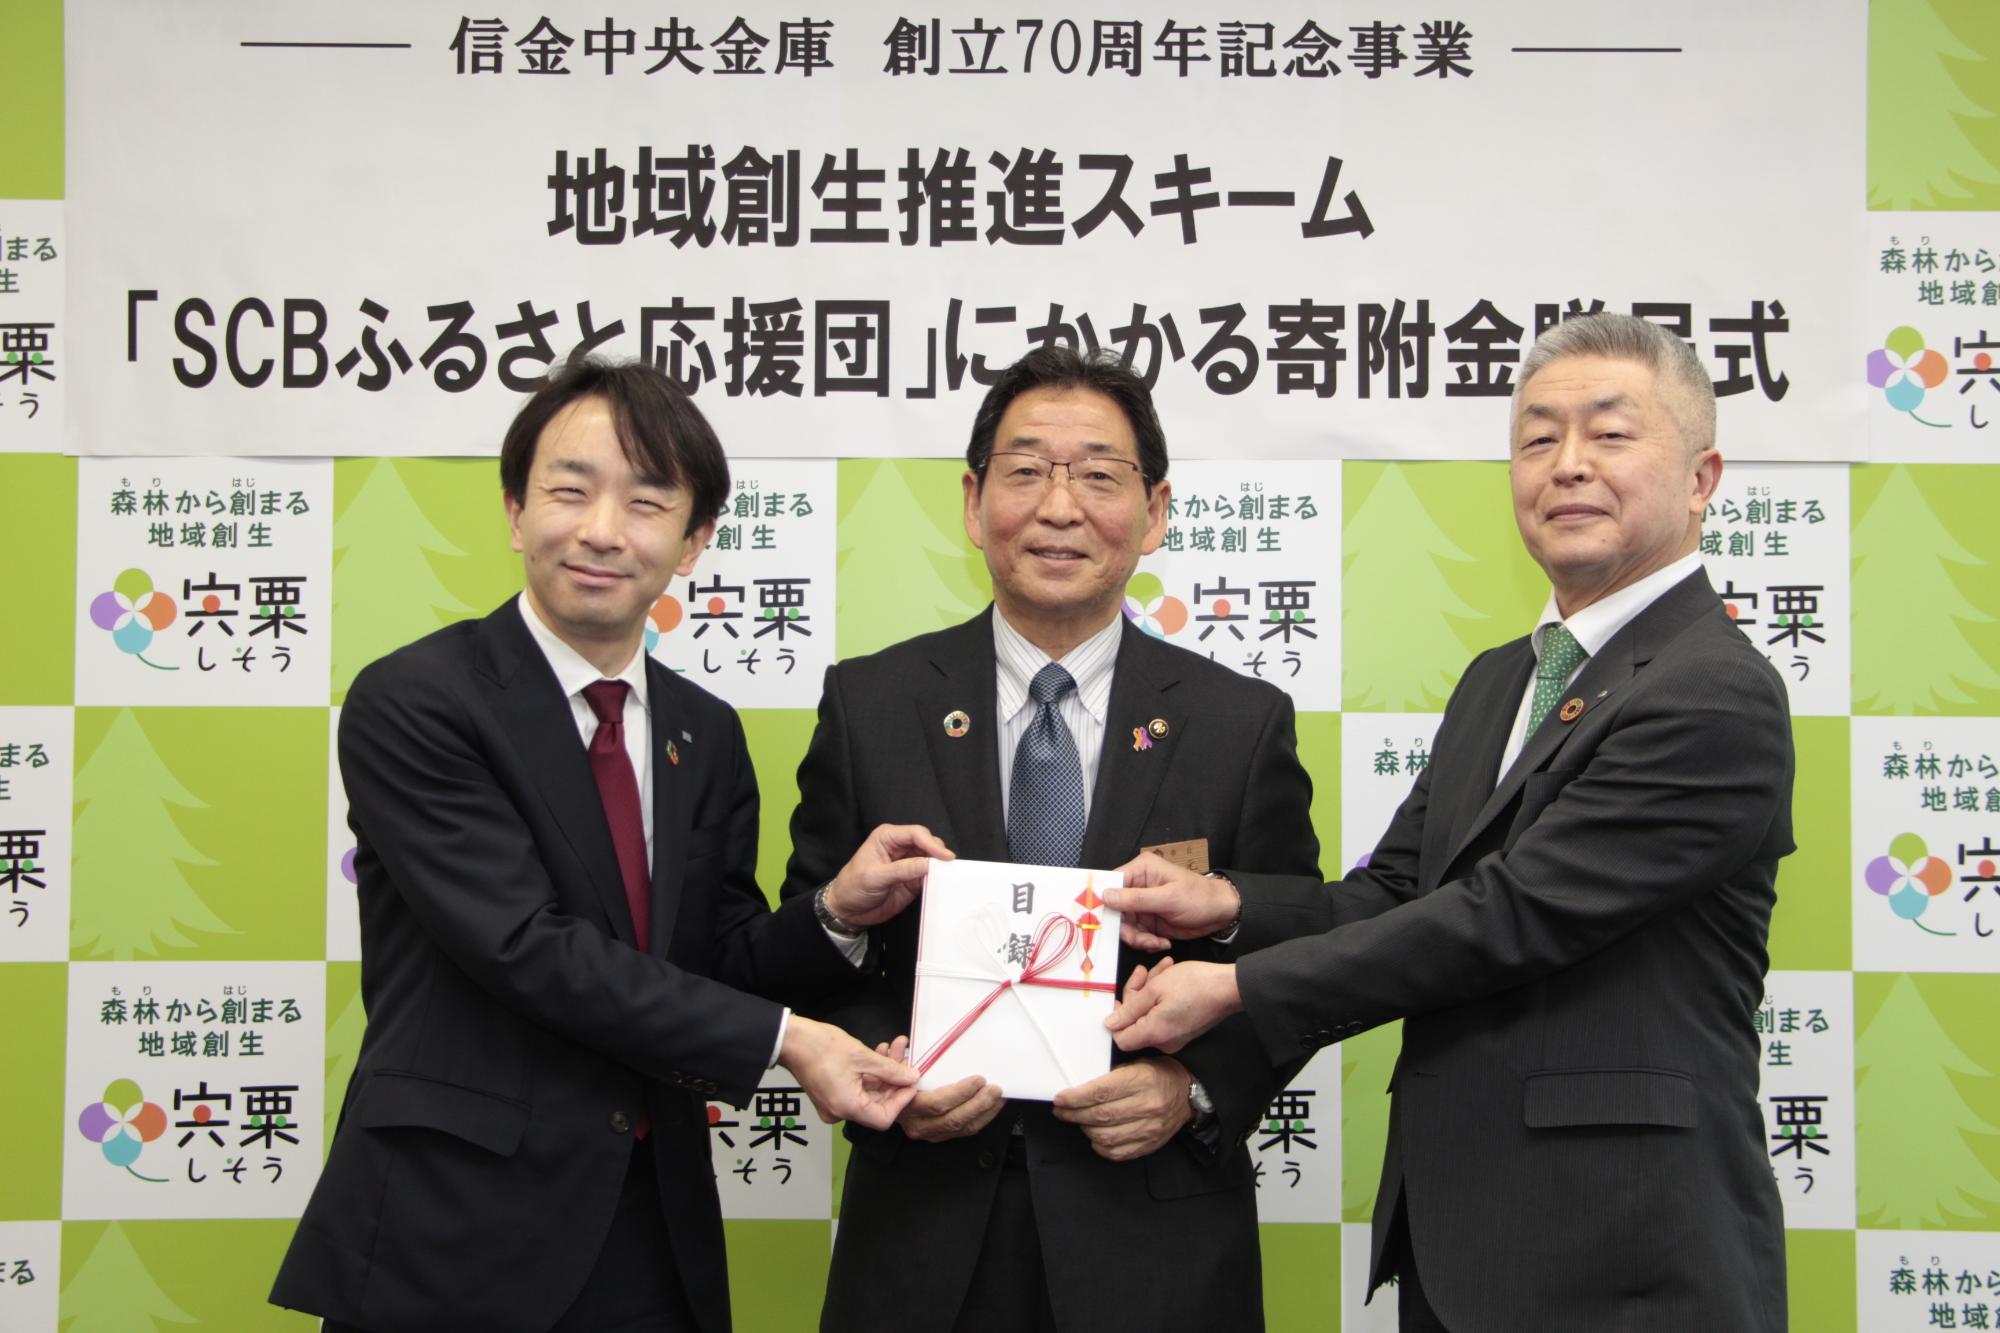 左は信金中金小平神戸支店長、中は福元市長、右は西信桑垣理事長が目録を手に並んでいる写真